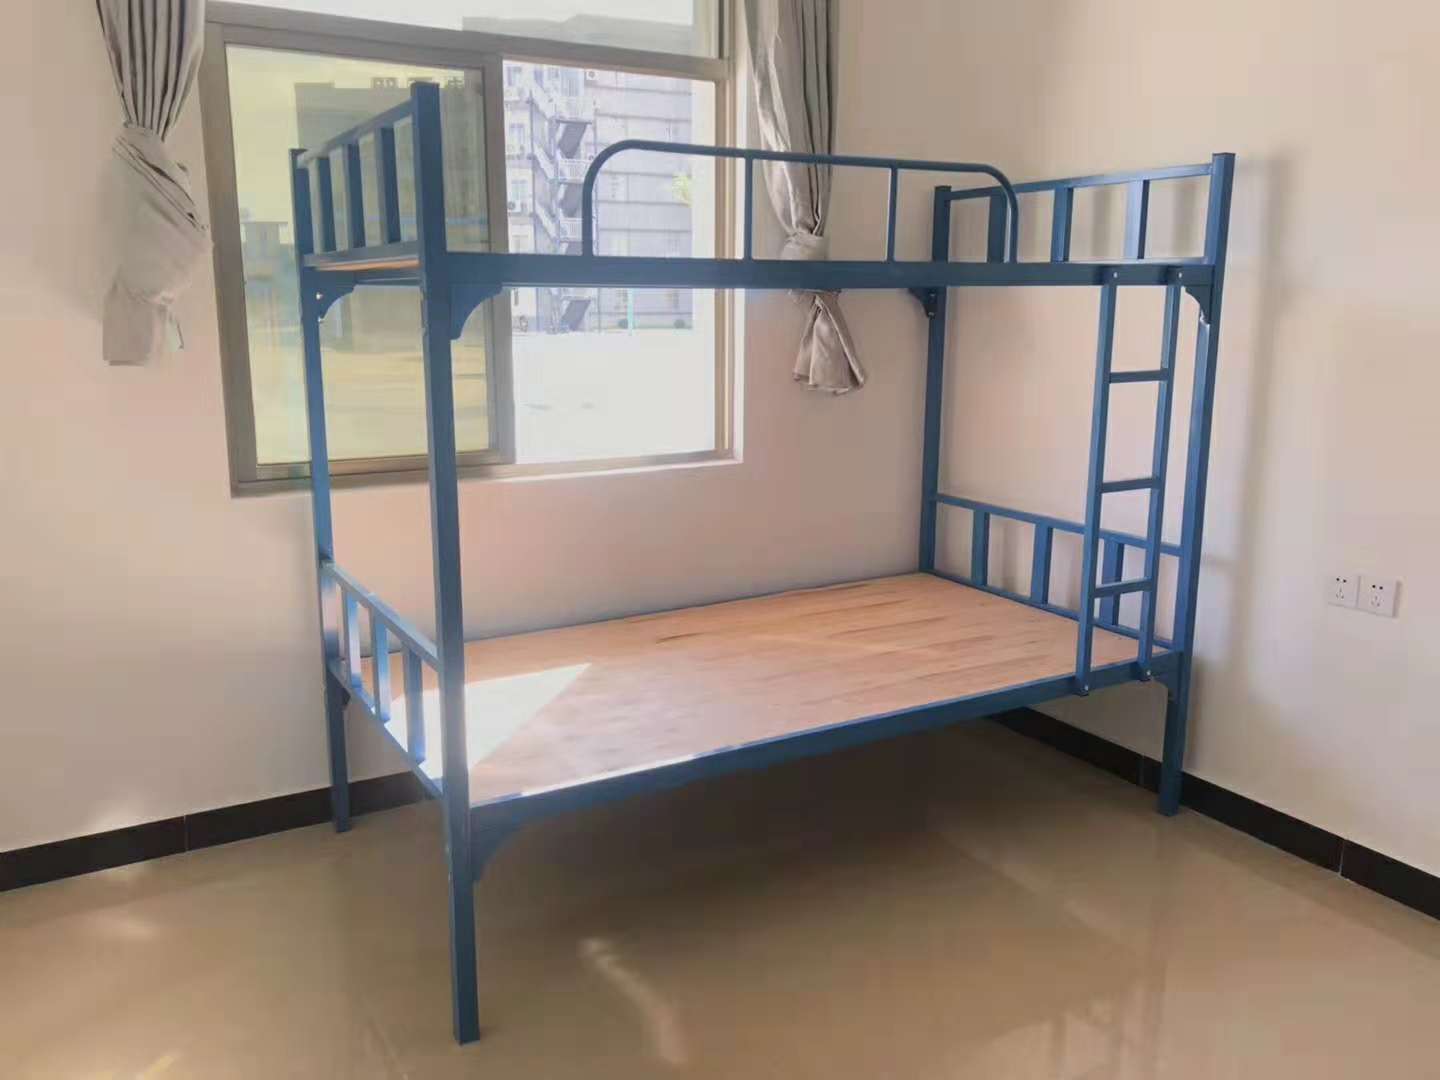 厂家销售上下铺床高低床双层床铁床 白色右爬梯下铺 双层子母床 白色右爬梯下铺